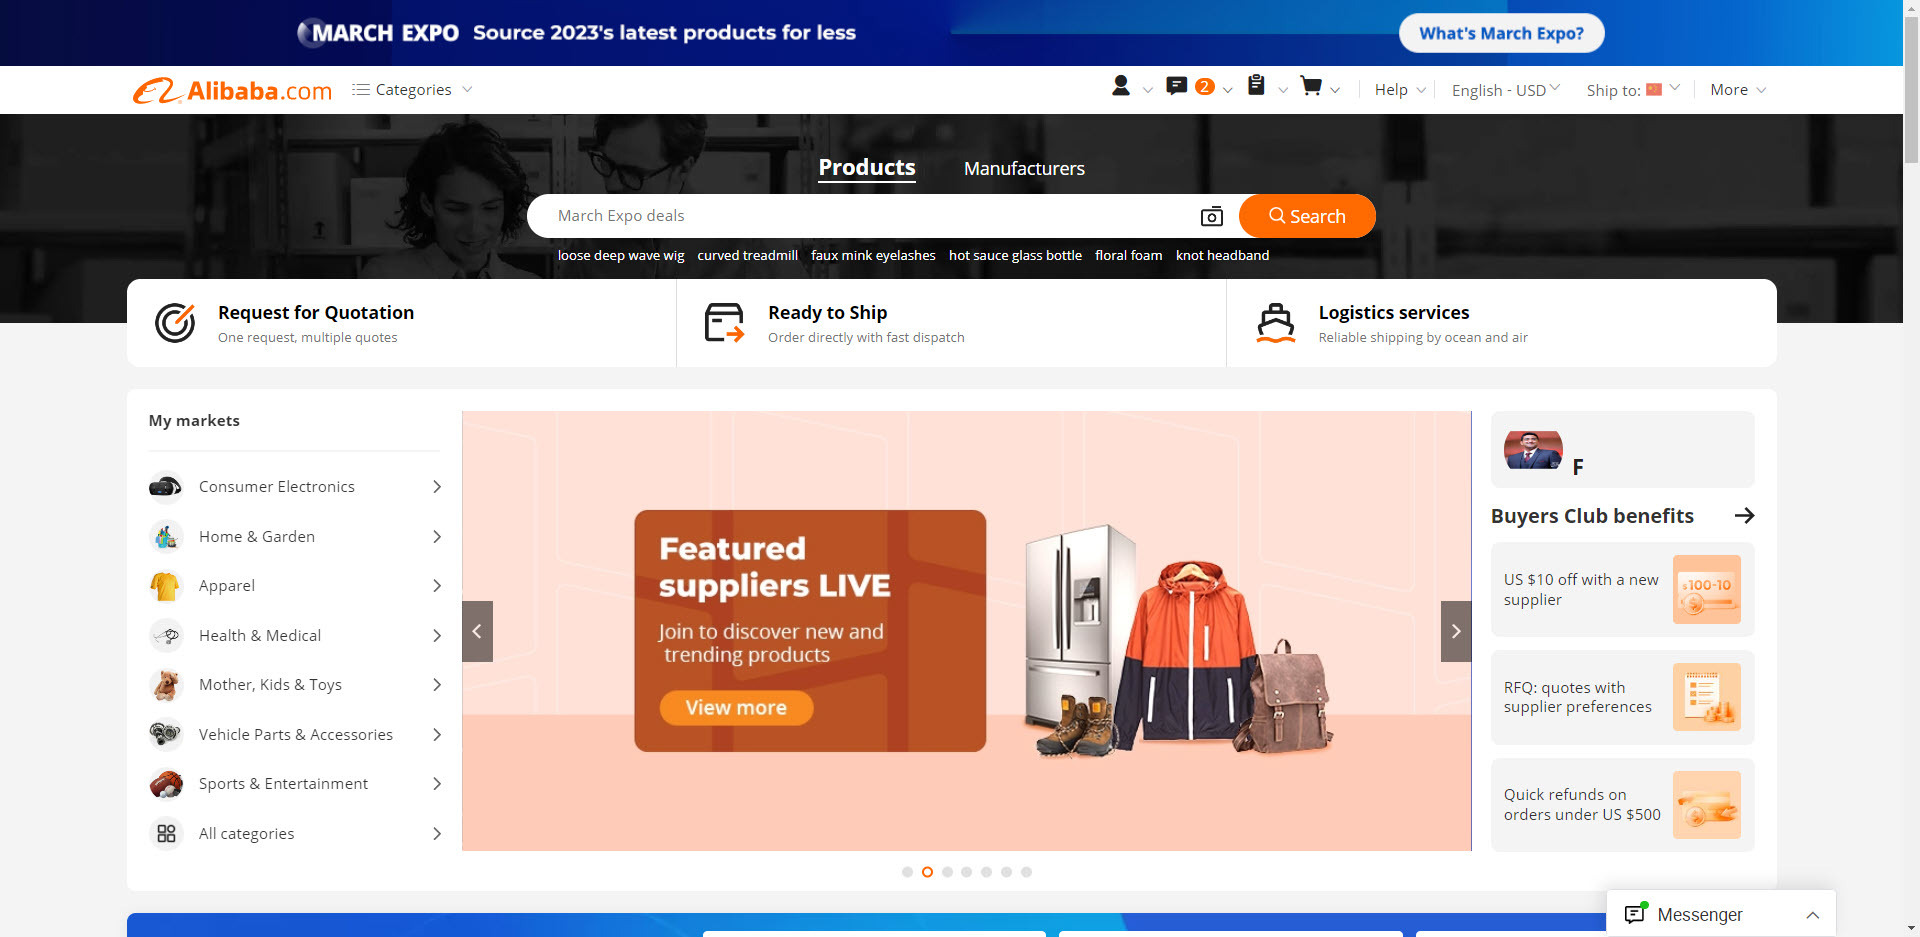 Homepage of Alibaba